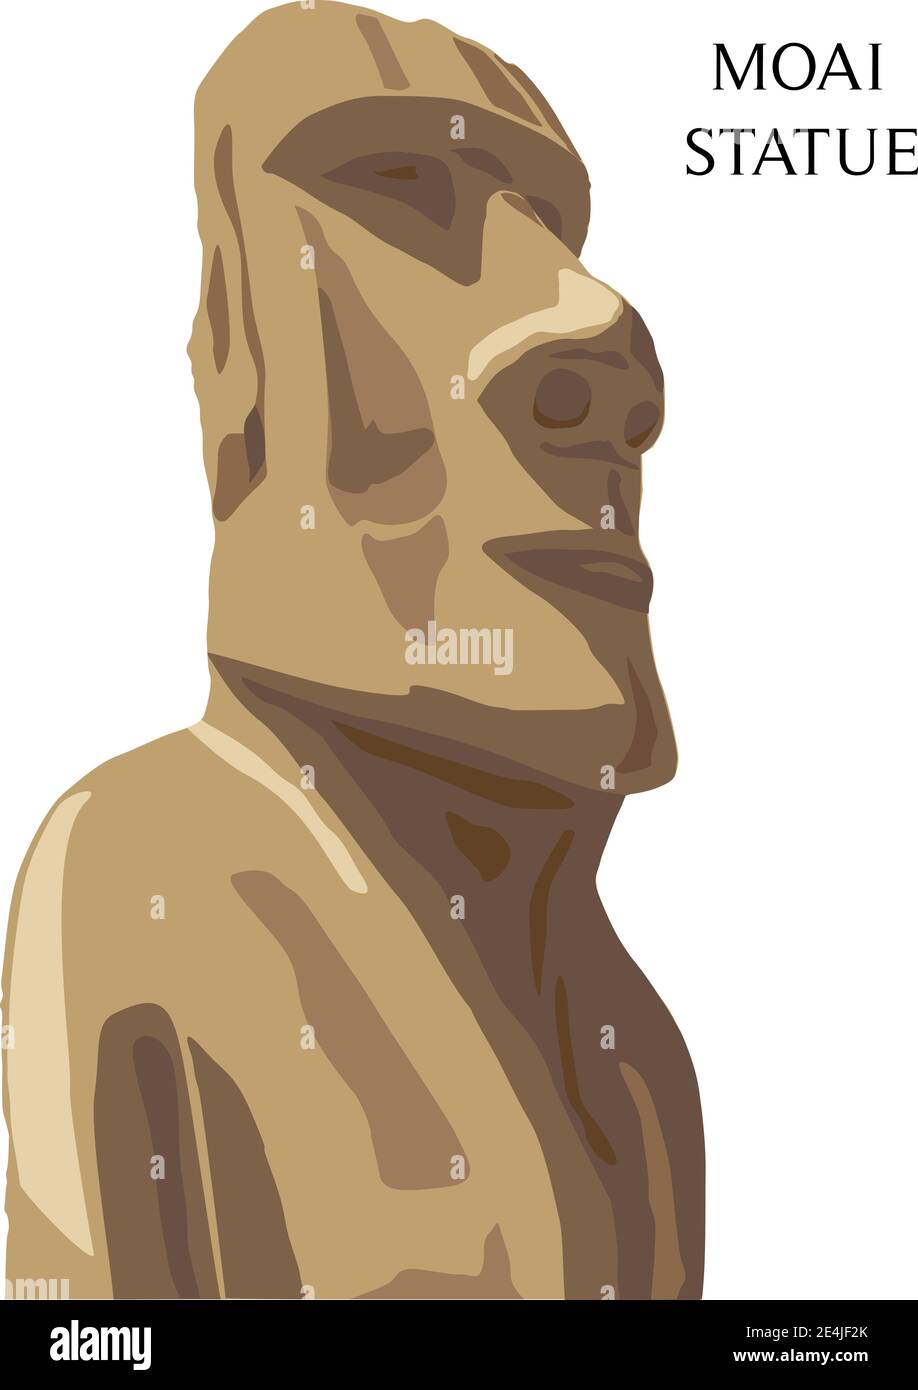 Statua monolitica di Moai Polinesia Isole di Pasqua e Cile, illustrazione vettoriale Illustrazione Vettoriale